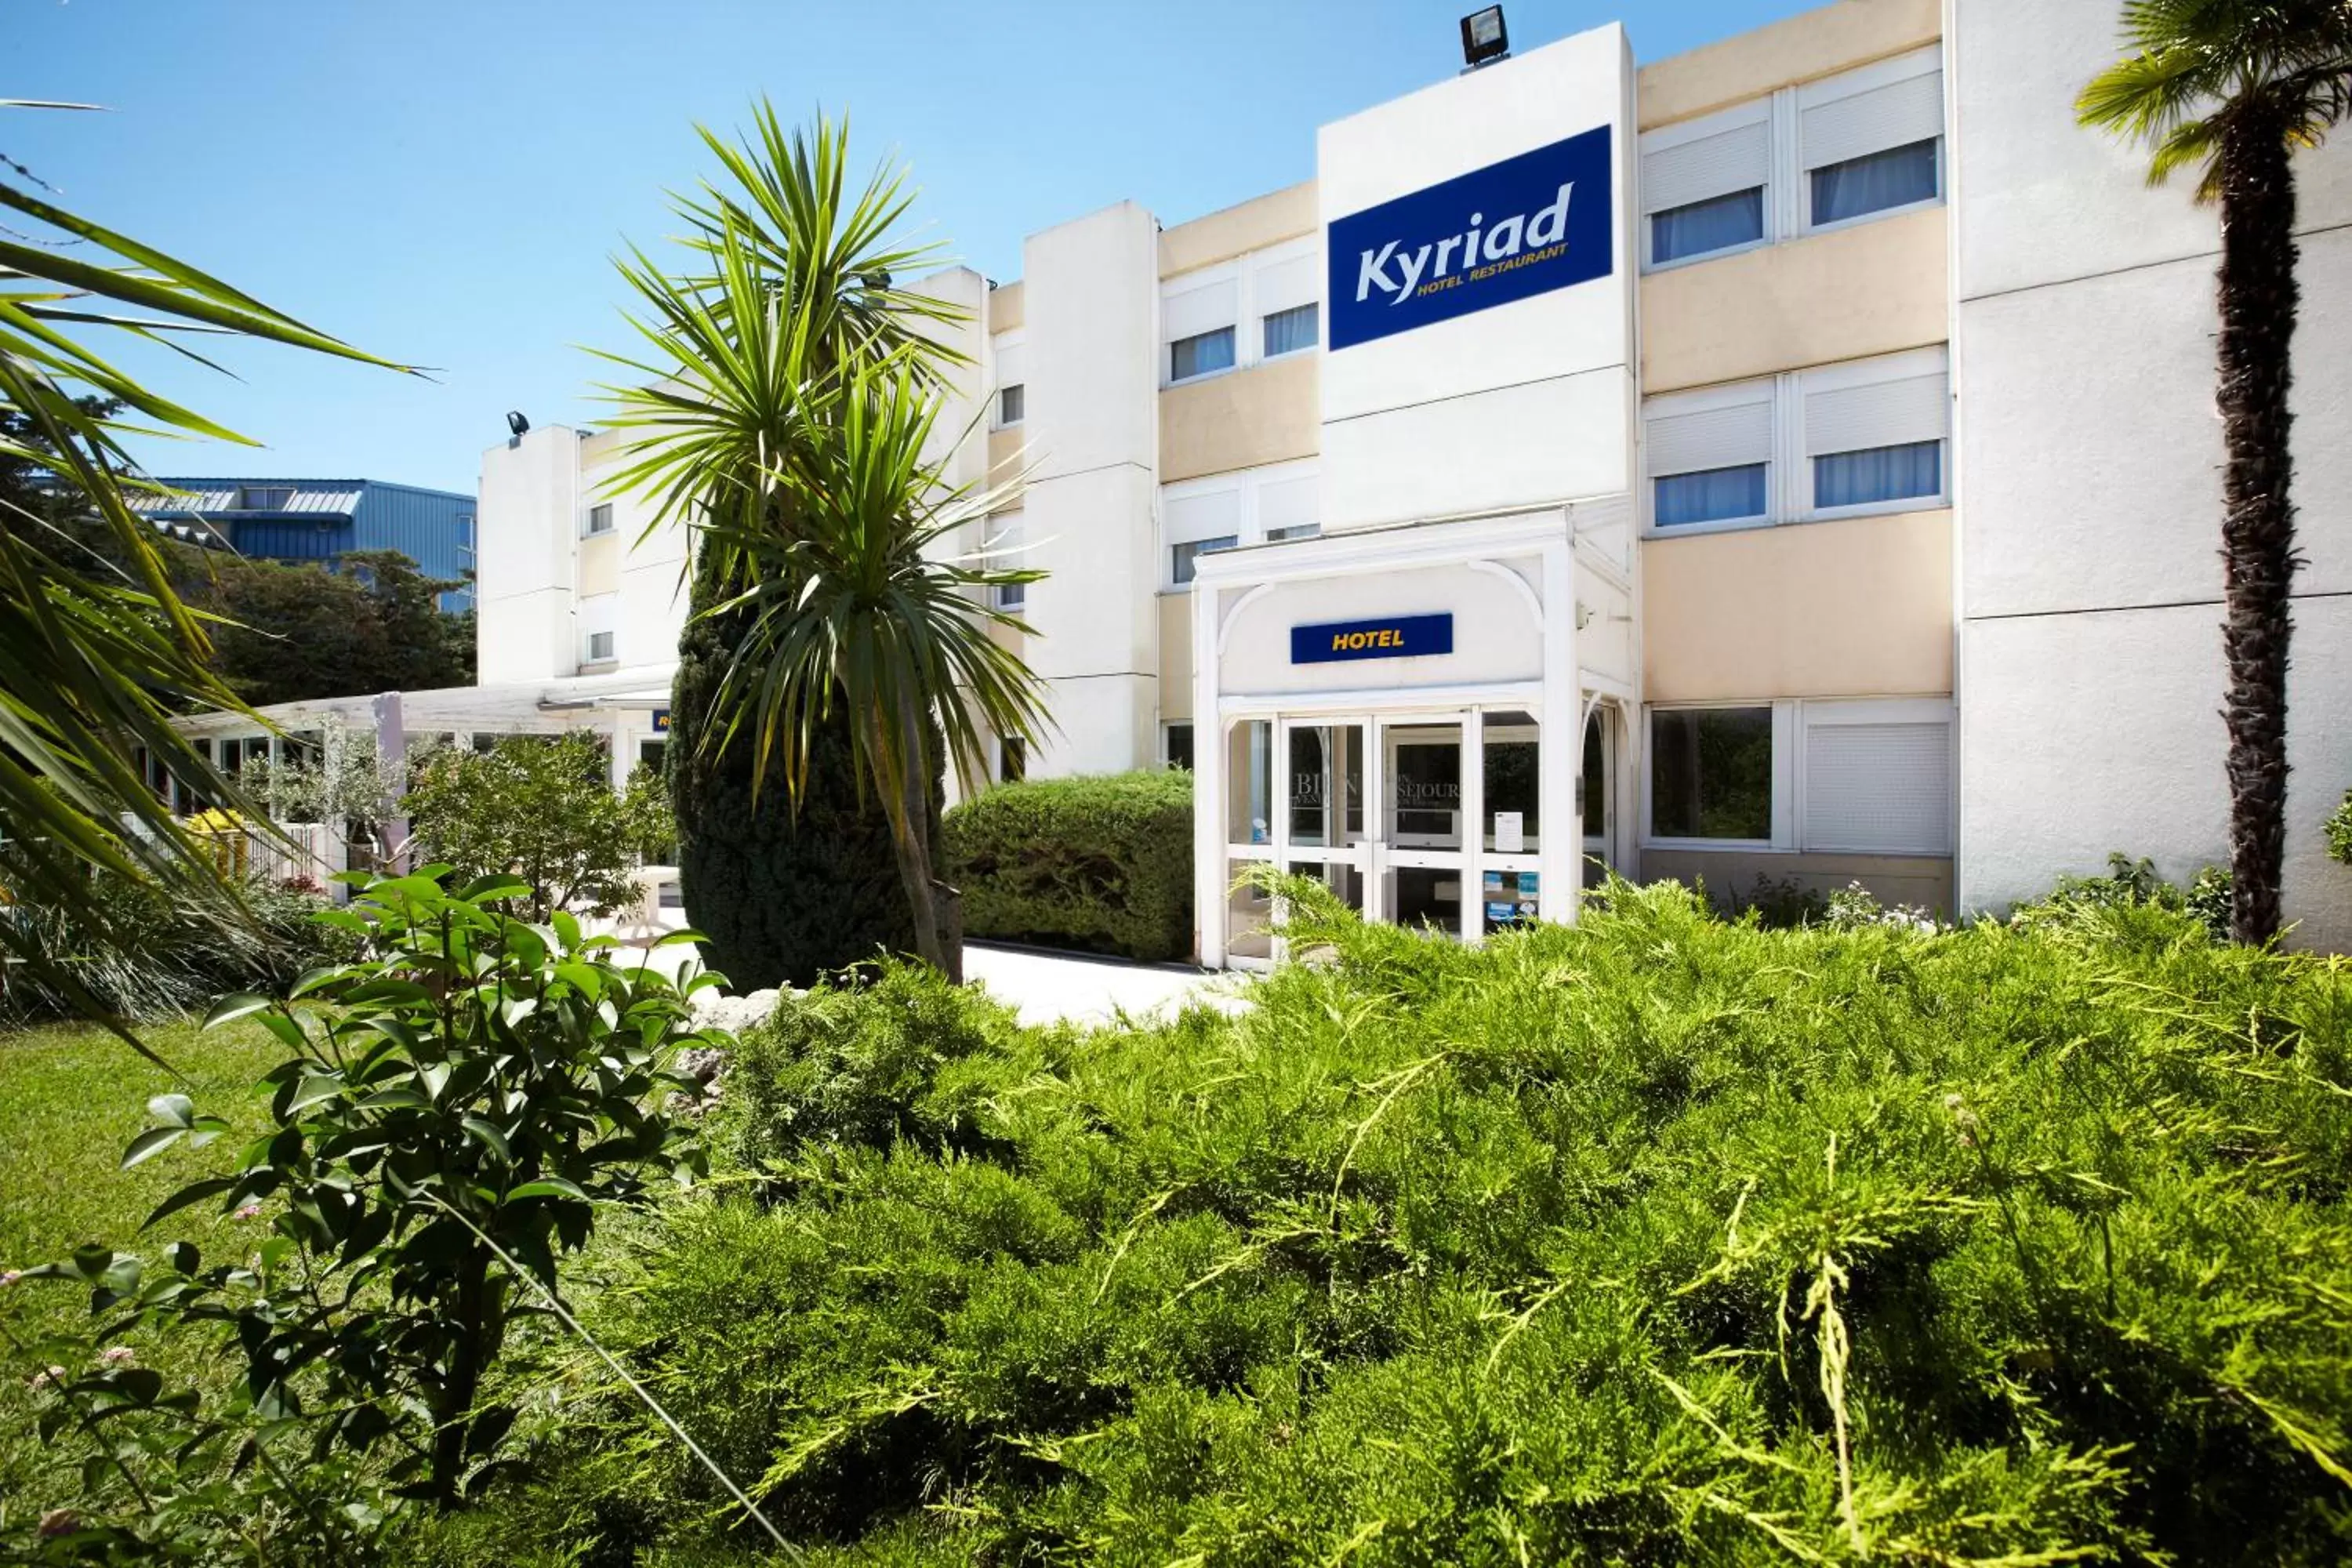 Facade/entrance, Property Building in Kyriad Toulon Est Hyeres La Garde